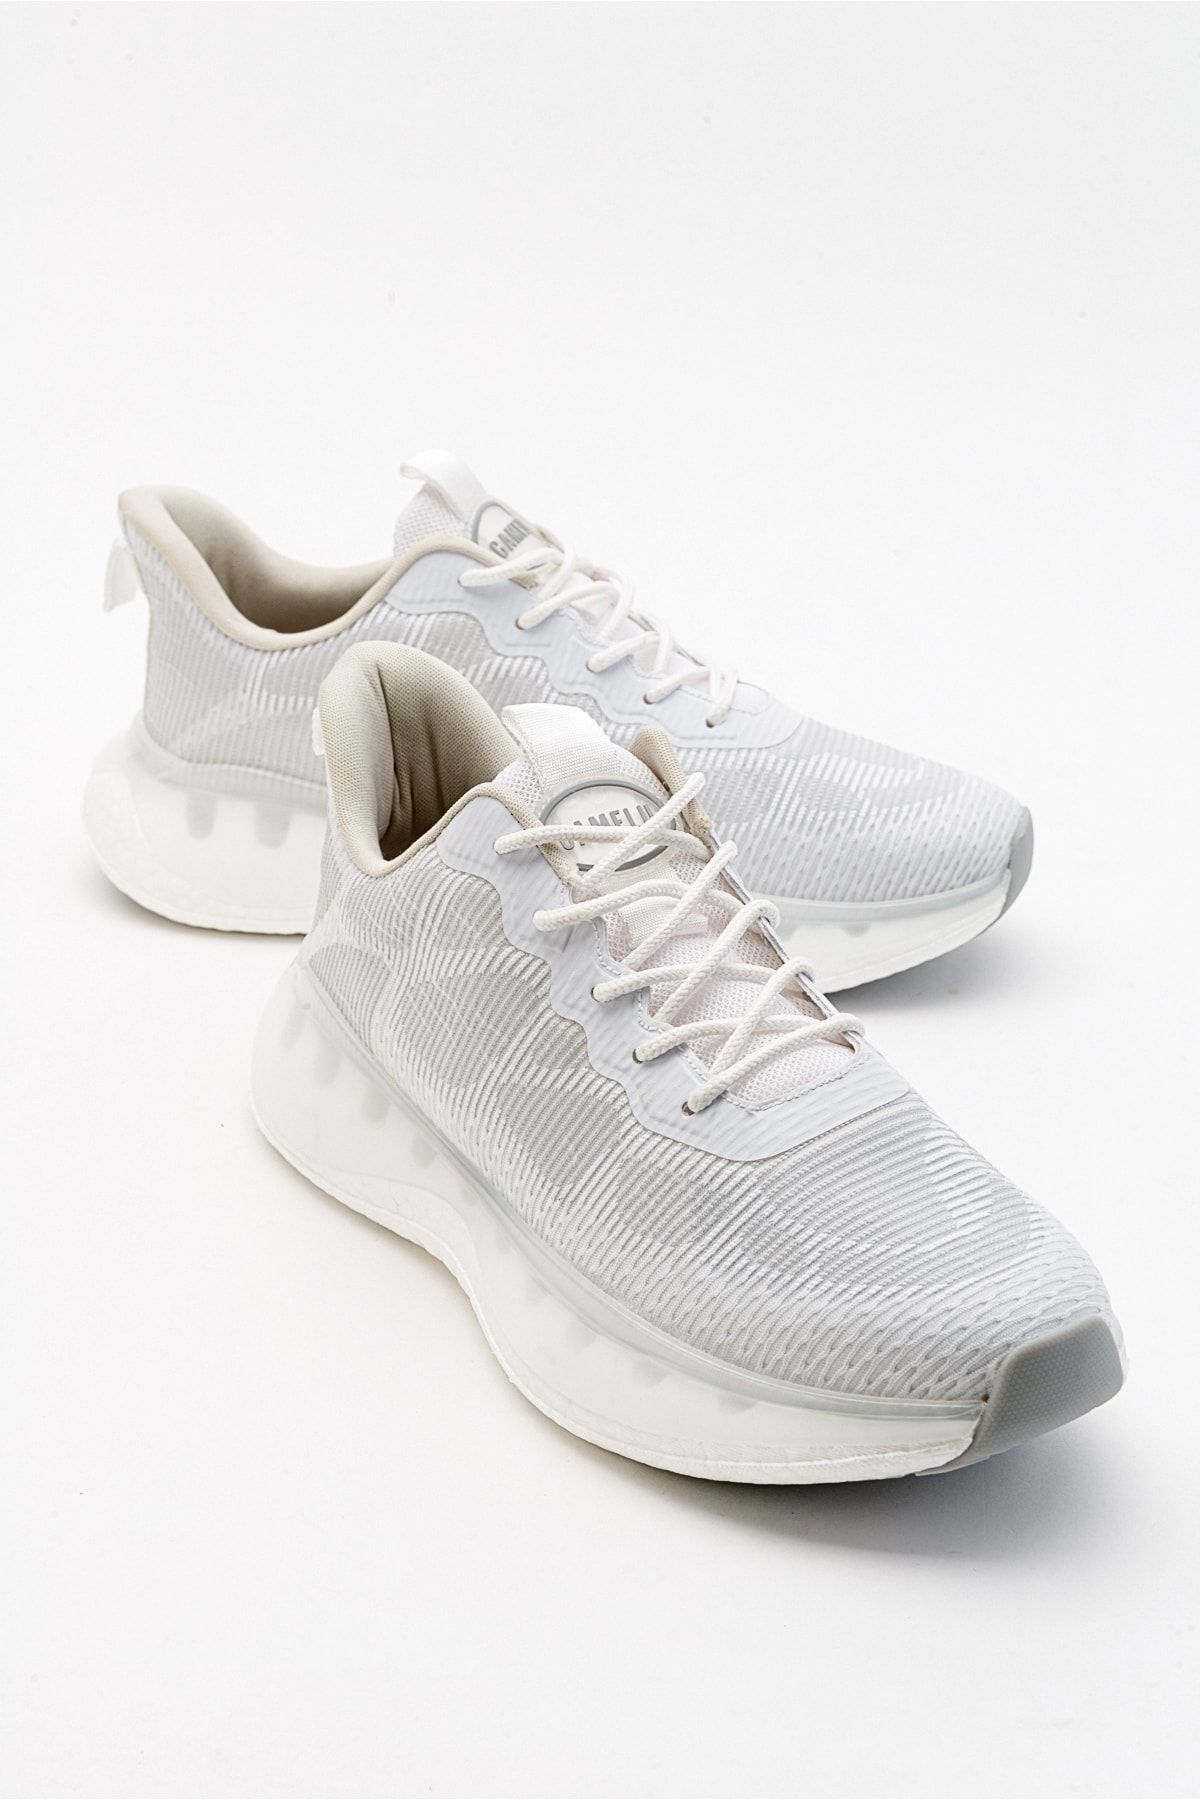 luvishoes Gruff Beyaz Erkek Spor Ayakkabı